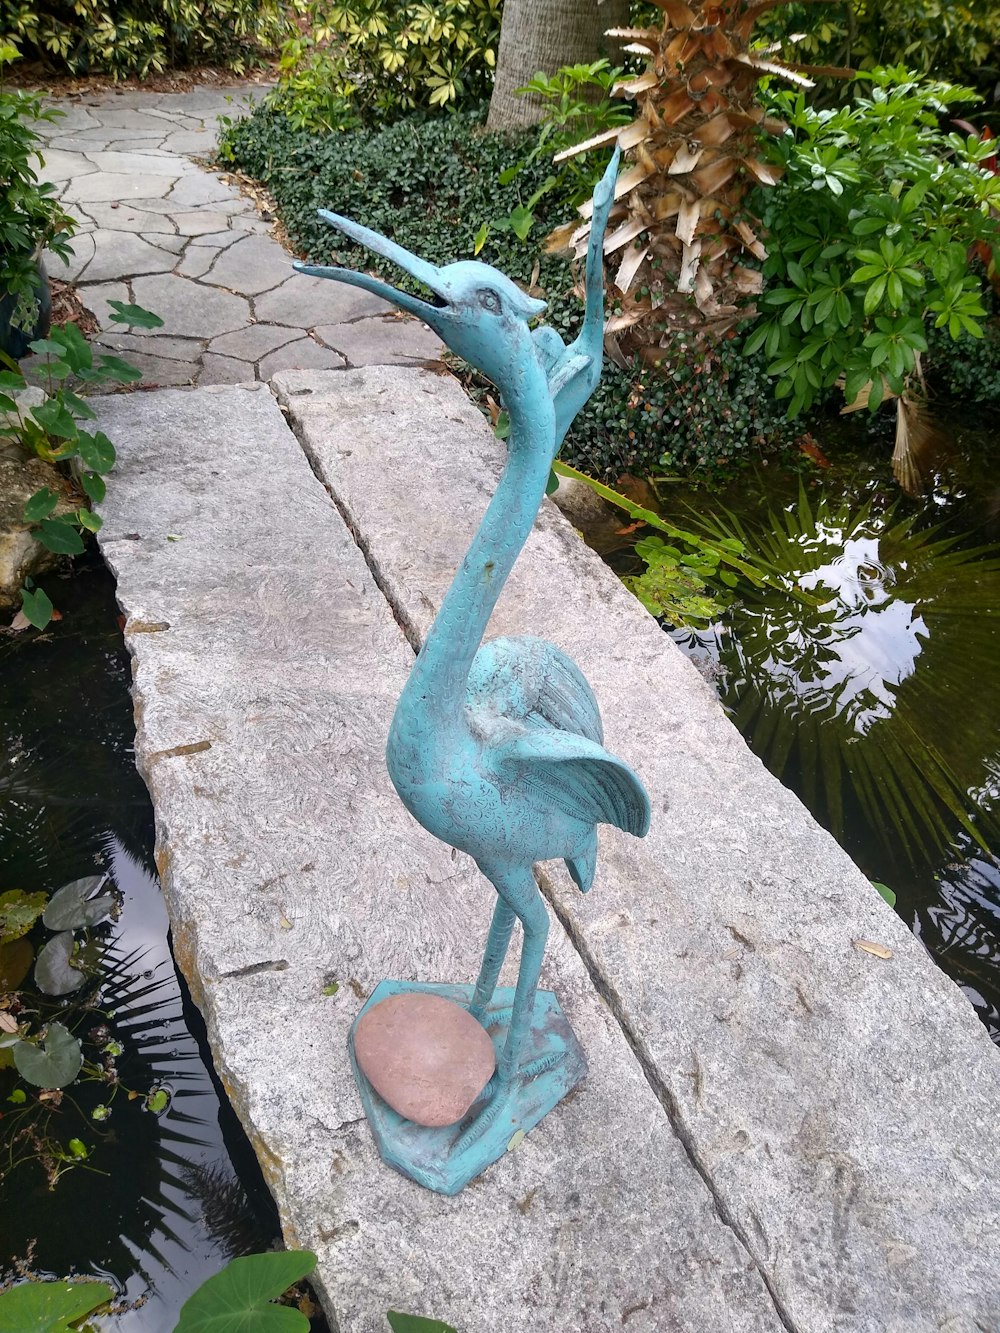 a statue of a bird on a rock near a pond